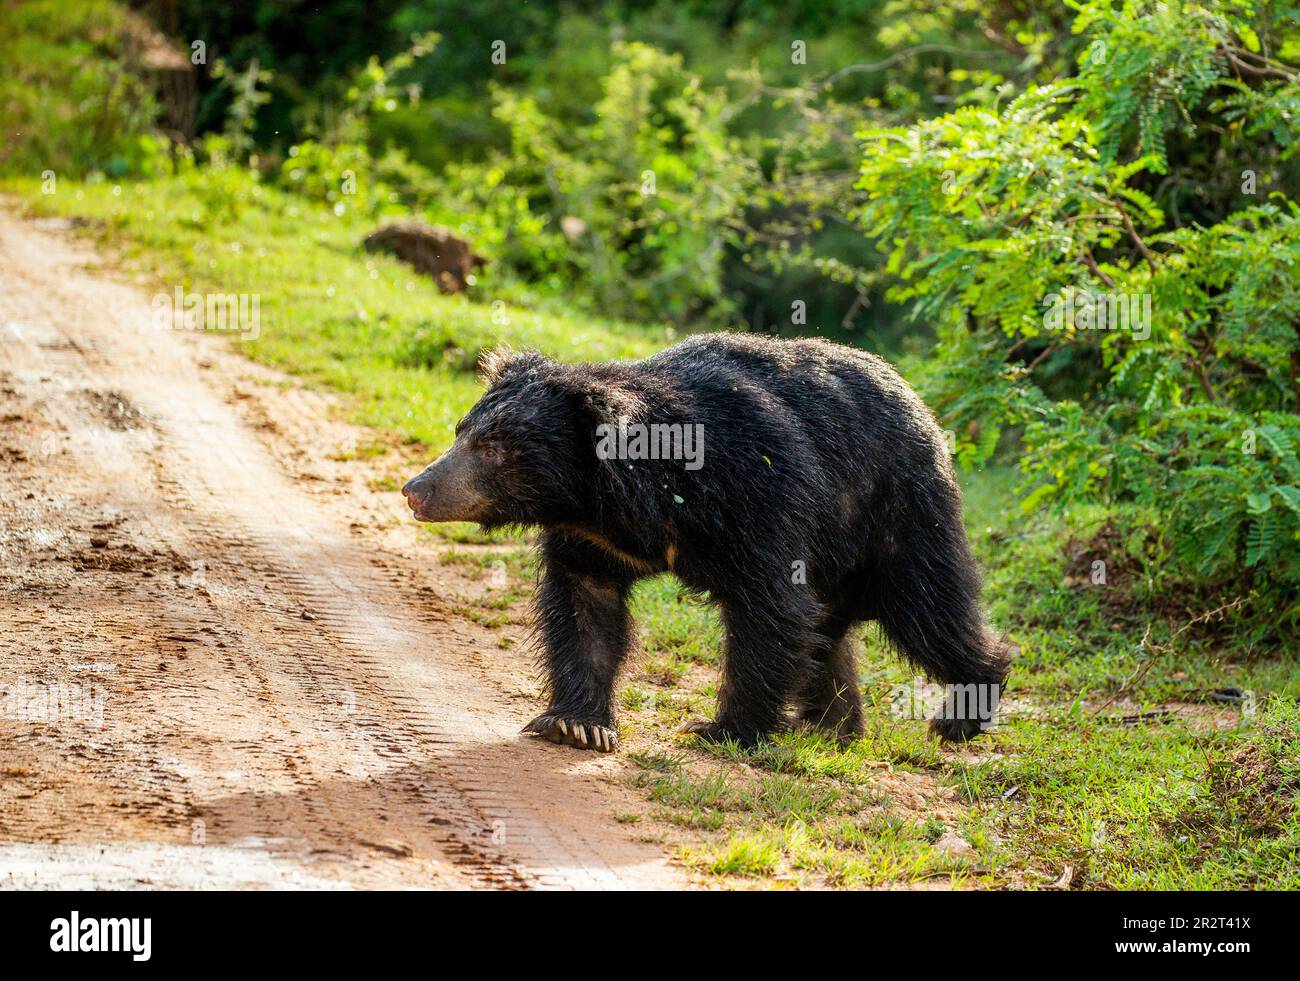 L'ours sloth sri-lankais (Melursus ursinus inornatus) est en marche le long de la route dans le parc national de Yala. Sri Lanka. Banque D'Images